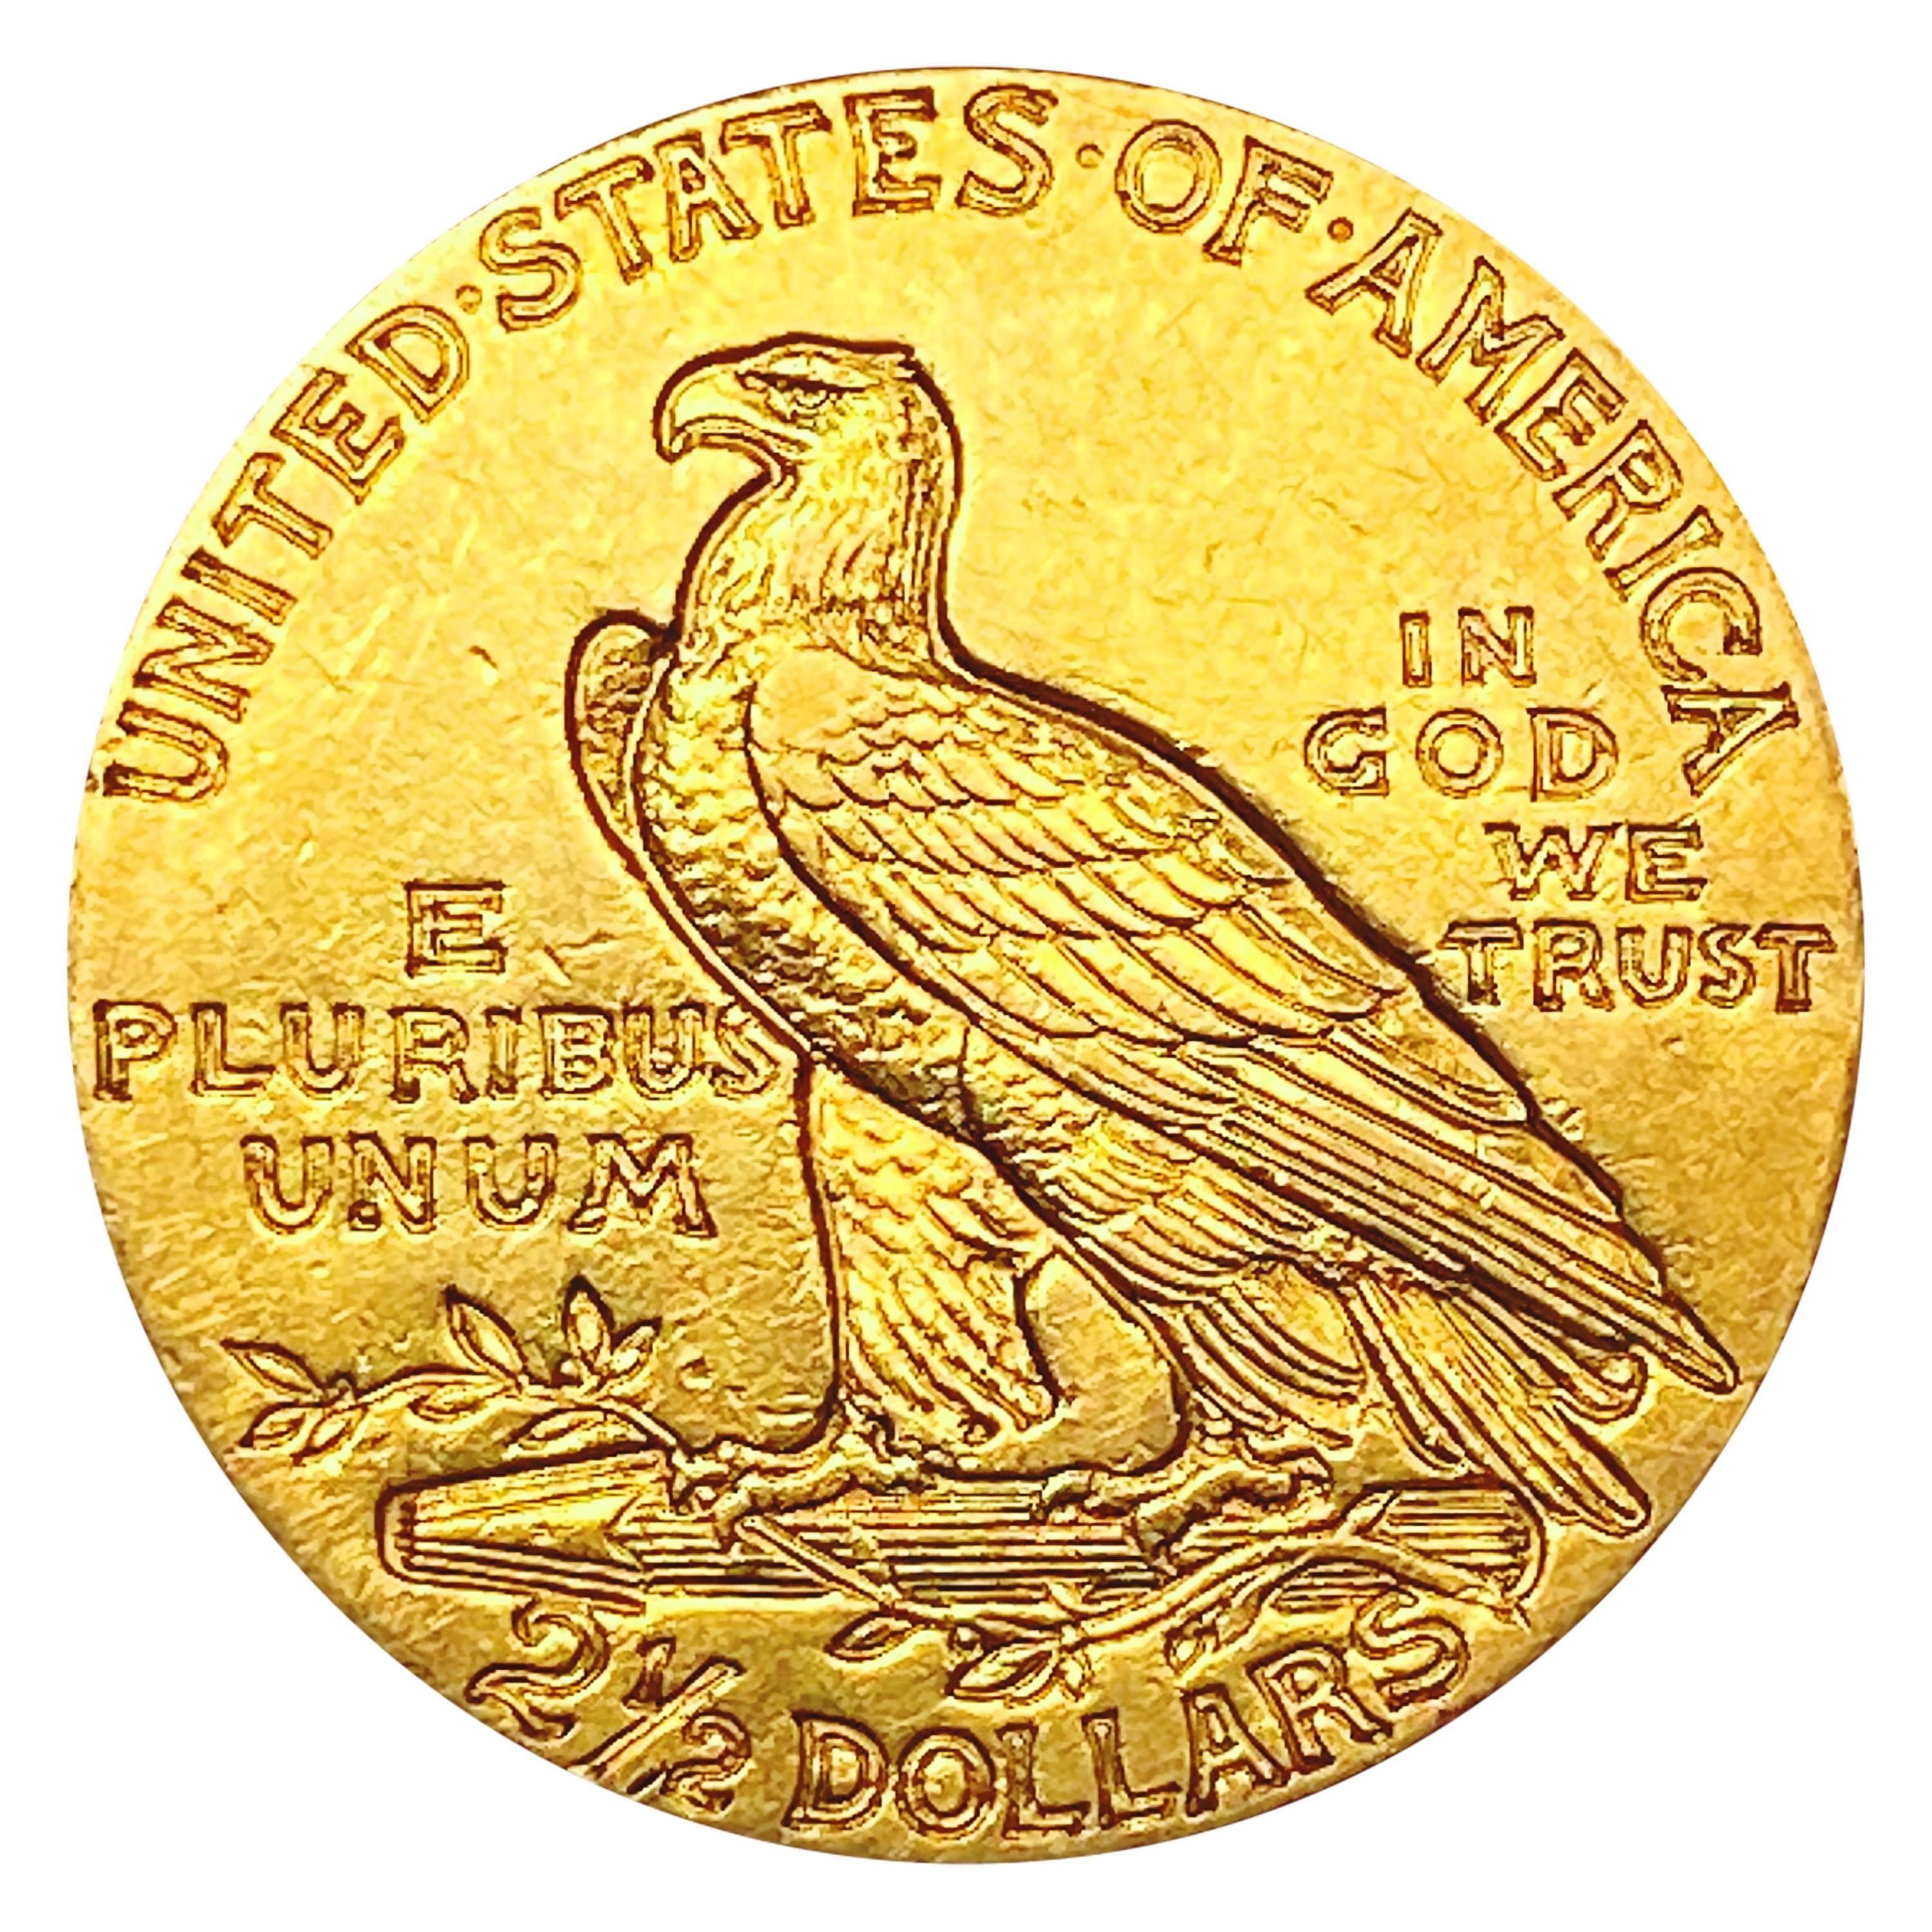 1909 $2.50 Gold Quarter Eagle CHOICE AU